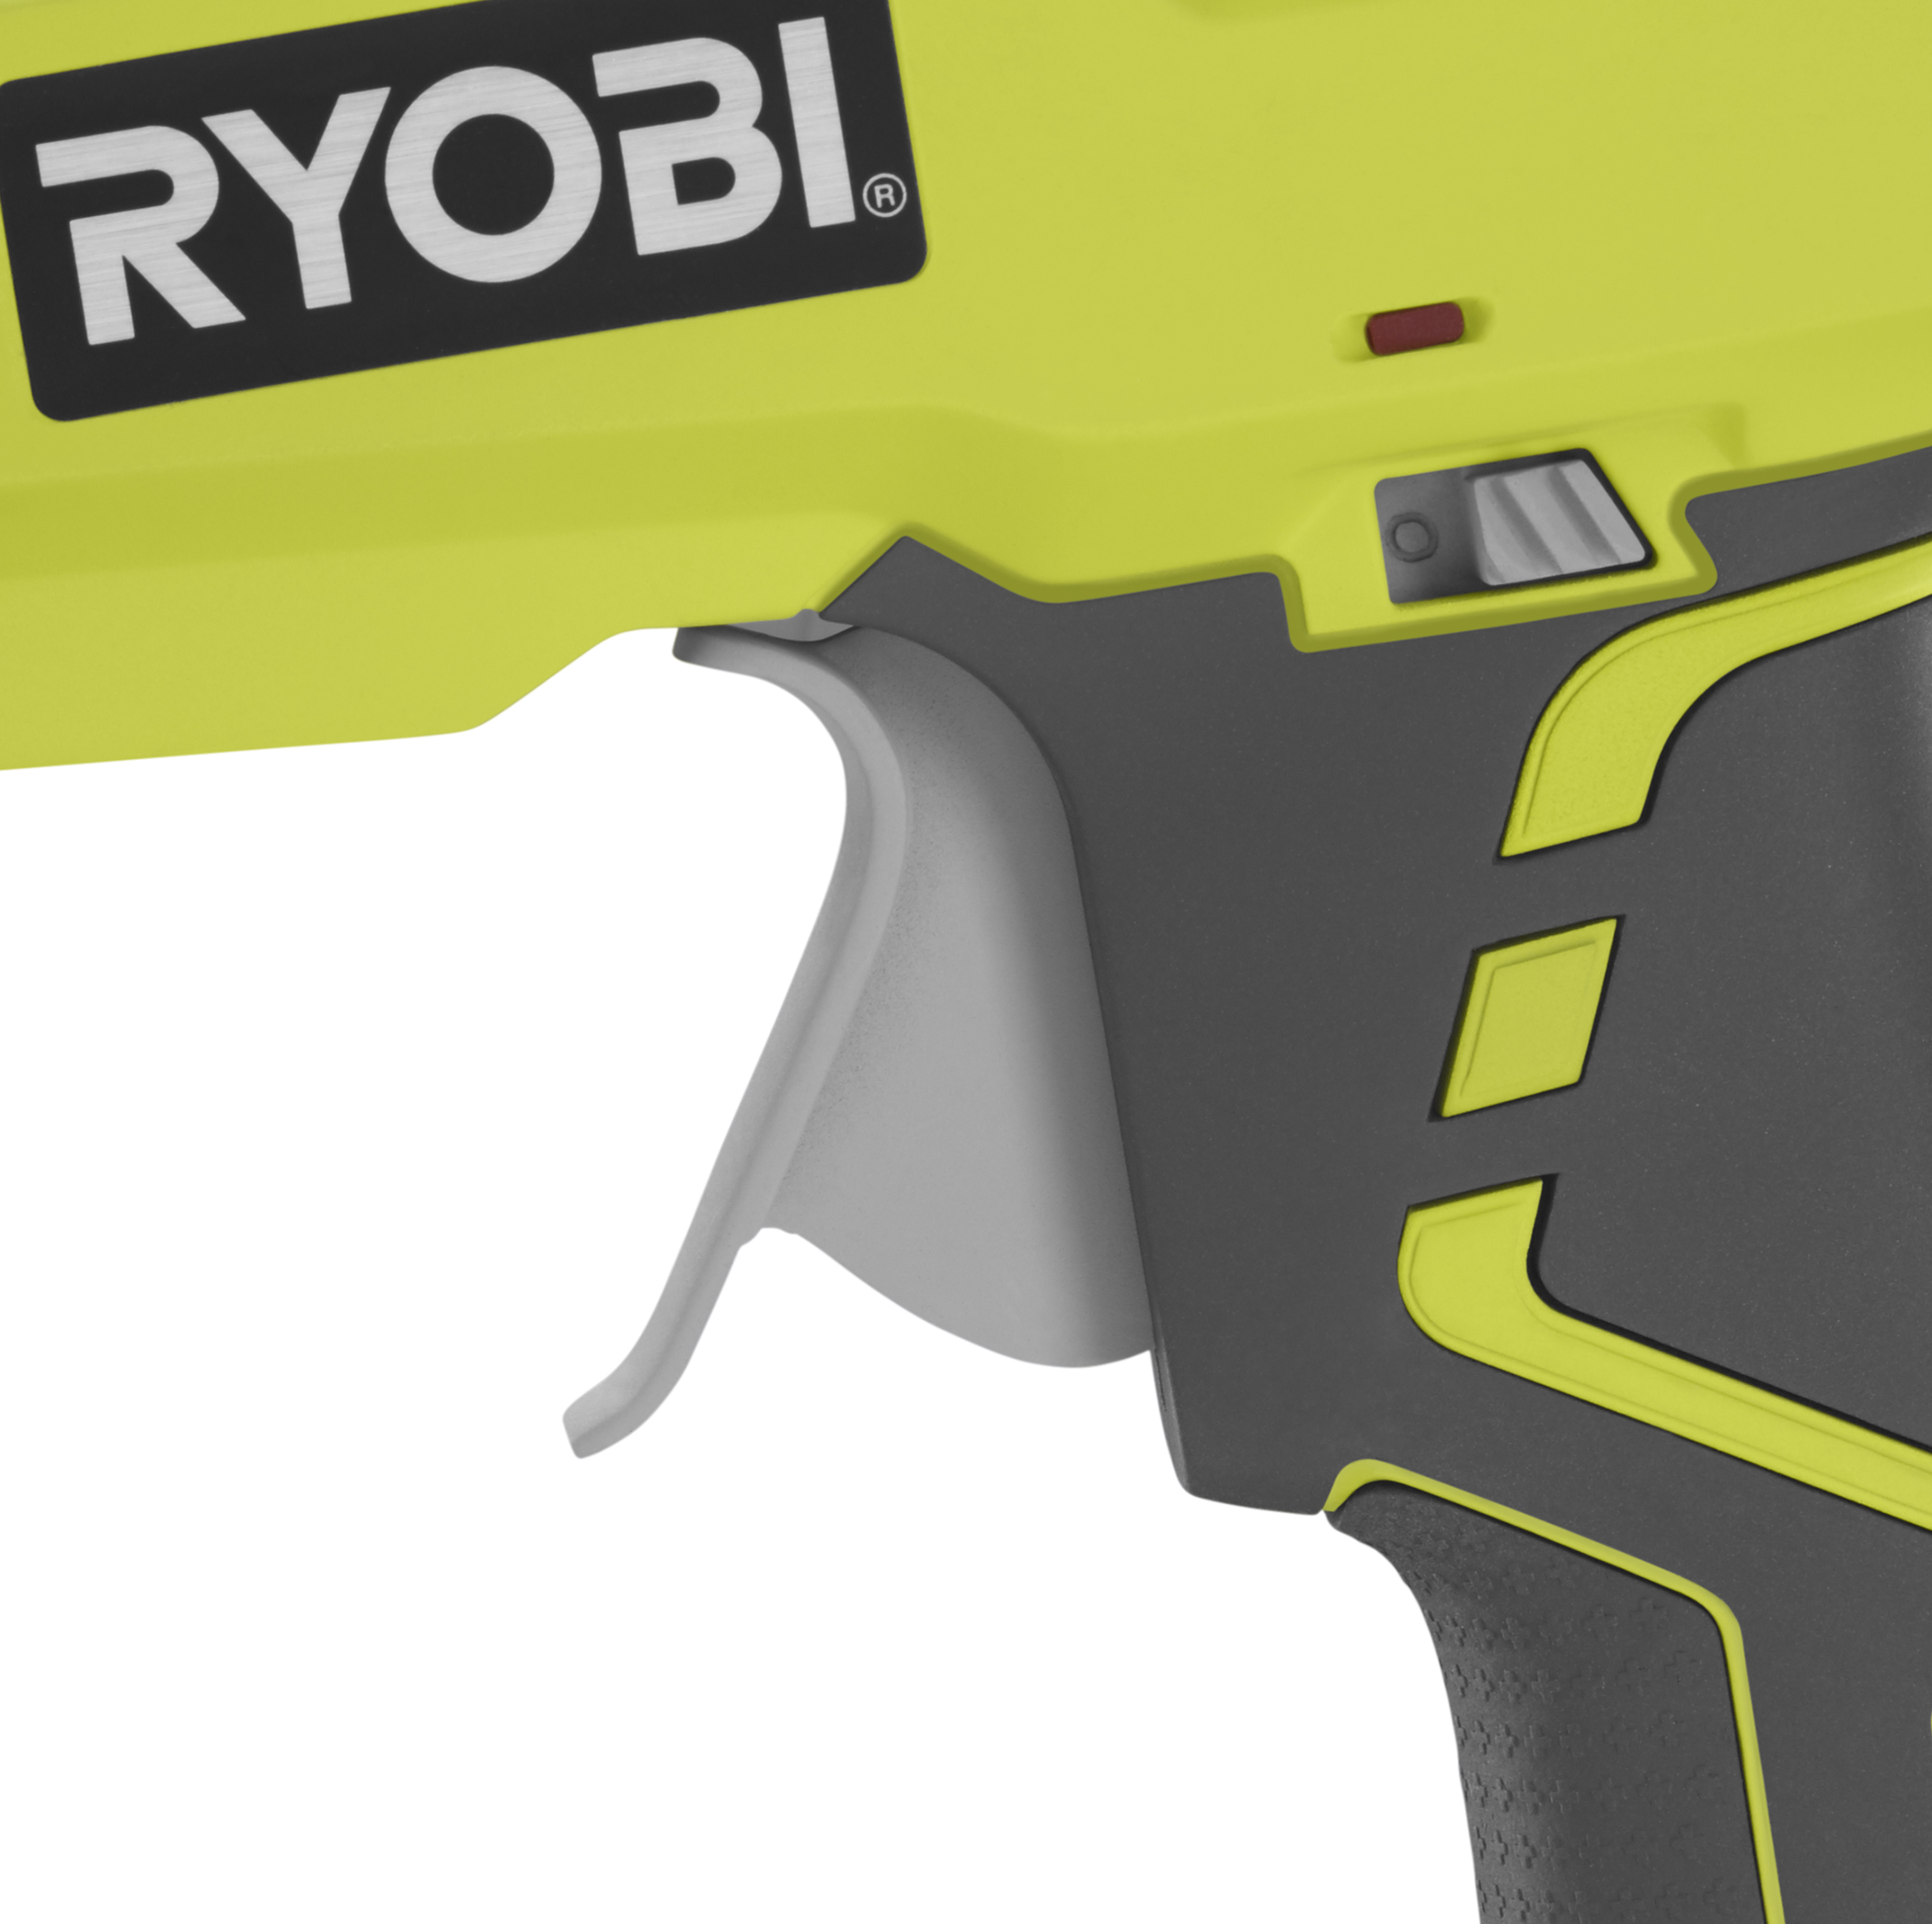 Ryobi 18V ONE + GLUE GUN P305 719392673012